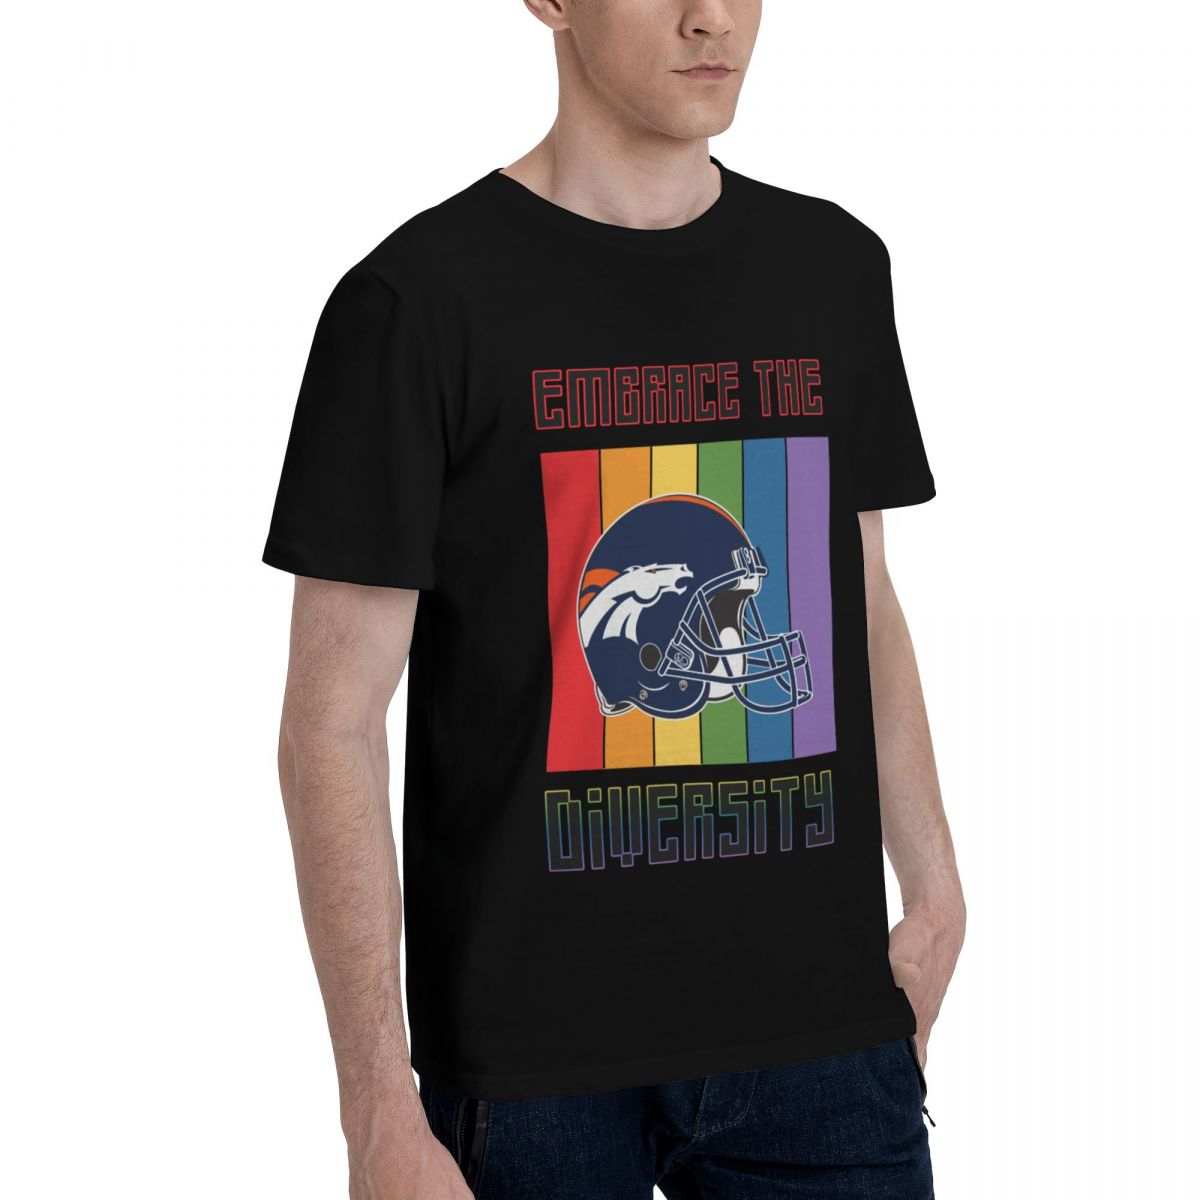 Denver Broncos Embrace The Diversity Cotton T-Shirt Men's